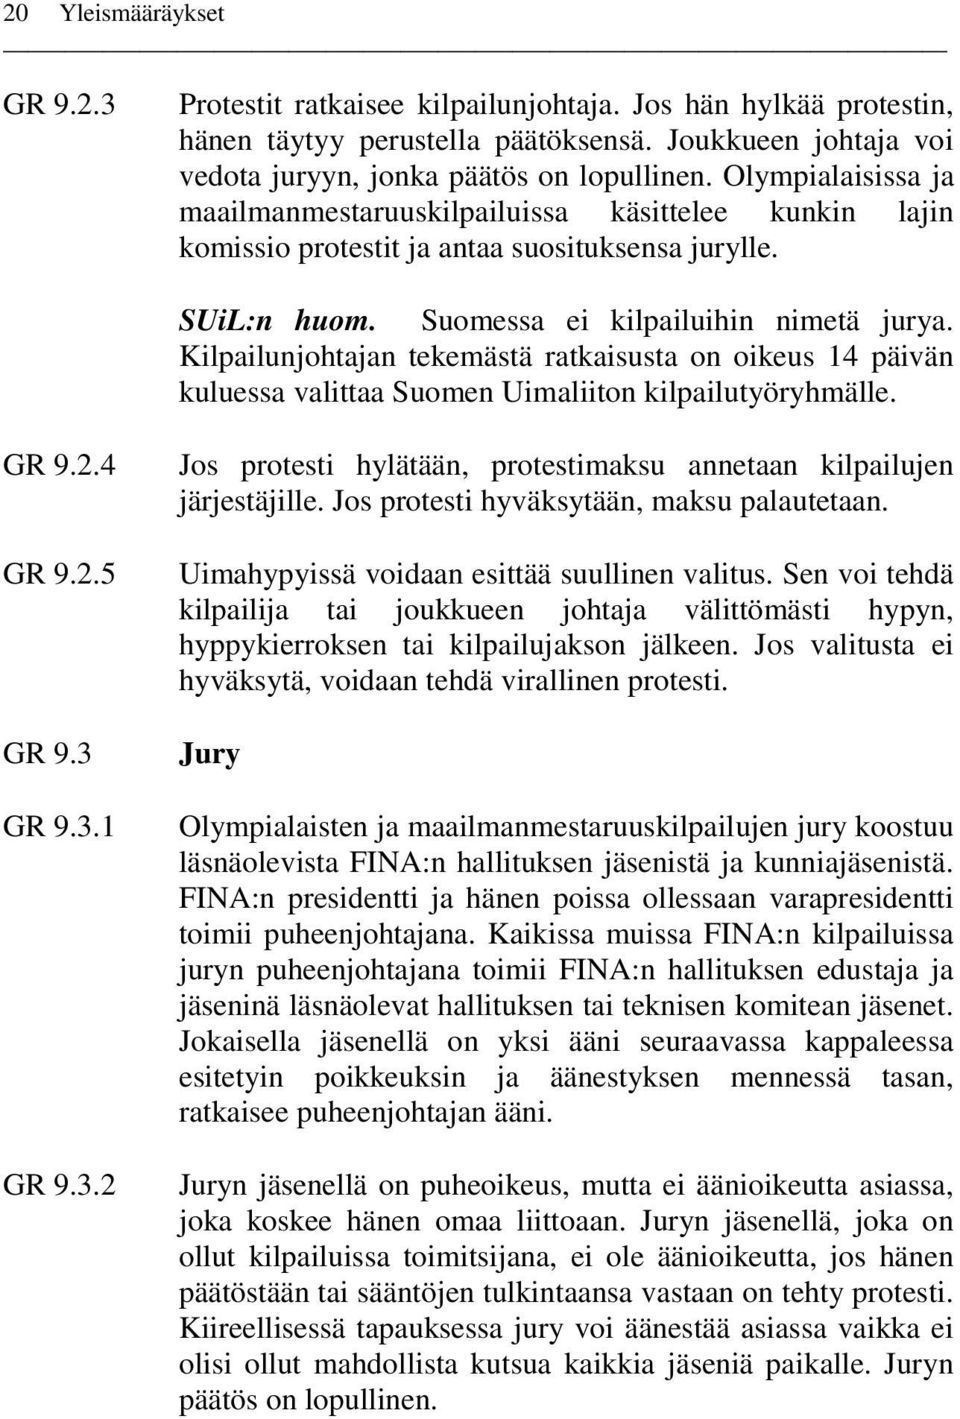 Kilpailunjohtajan tekemästä ratkaisusta on oikeus 14 päivän kuluessa valittaa Suomen Uimaliiton kilpailutyöryhmälle. GR 9.2.4 GR 9.2.5 GR 9.3 